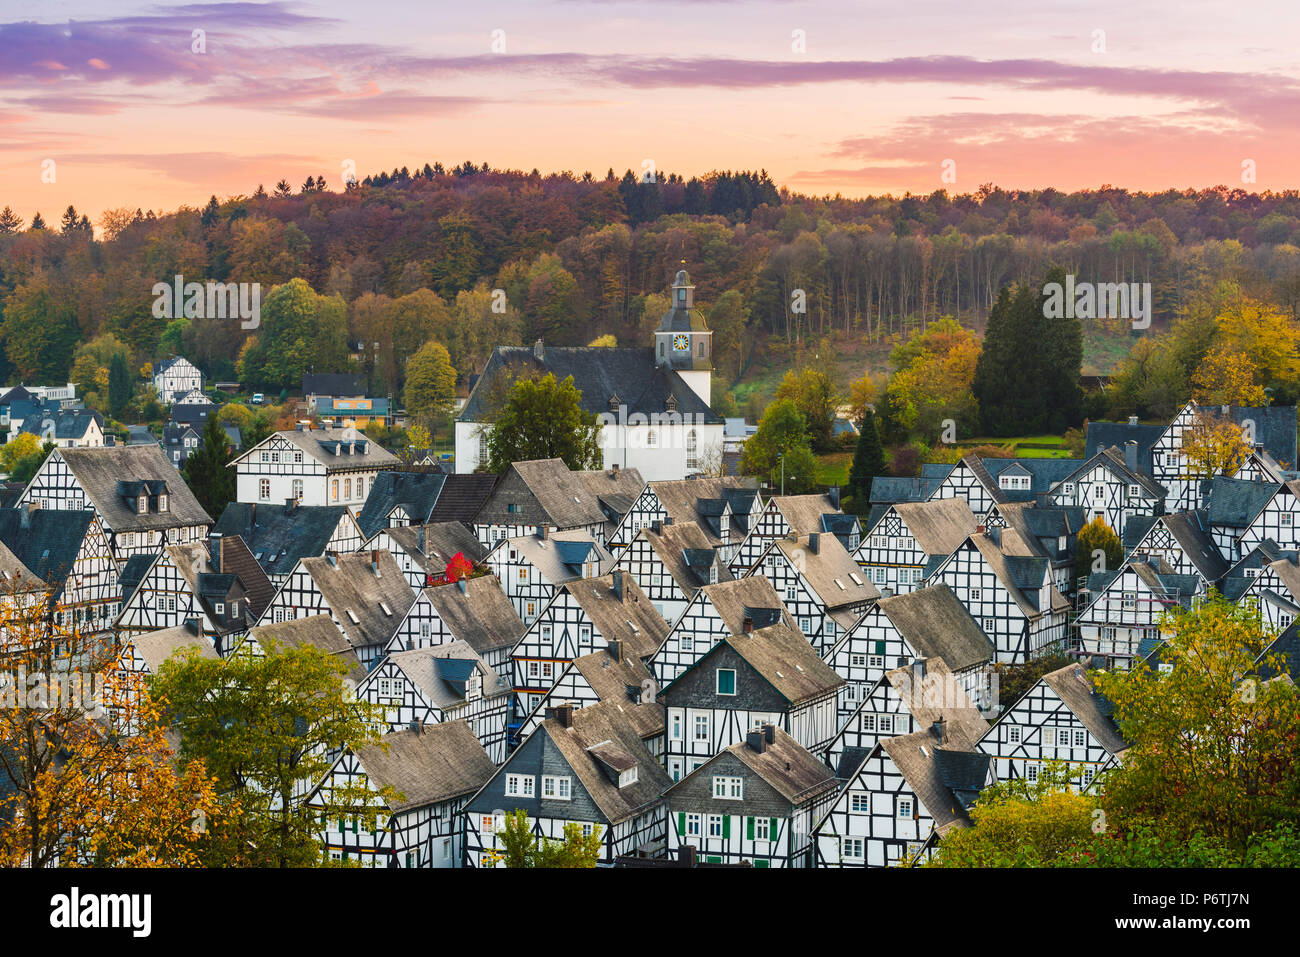 Freudenberg, Düren, Rhénanie du Nord-Westphalie, Allemagne. Maisons à pans de bois typique dans le centre historique 'Changer' vacances vieille ville. Banque D'Images